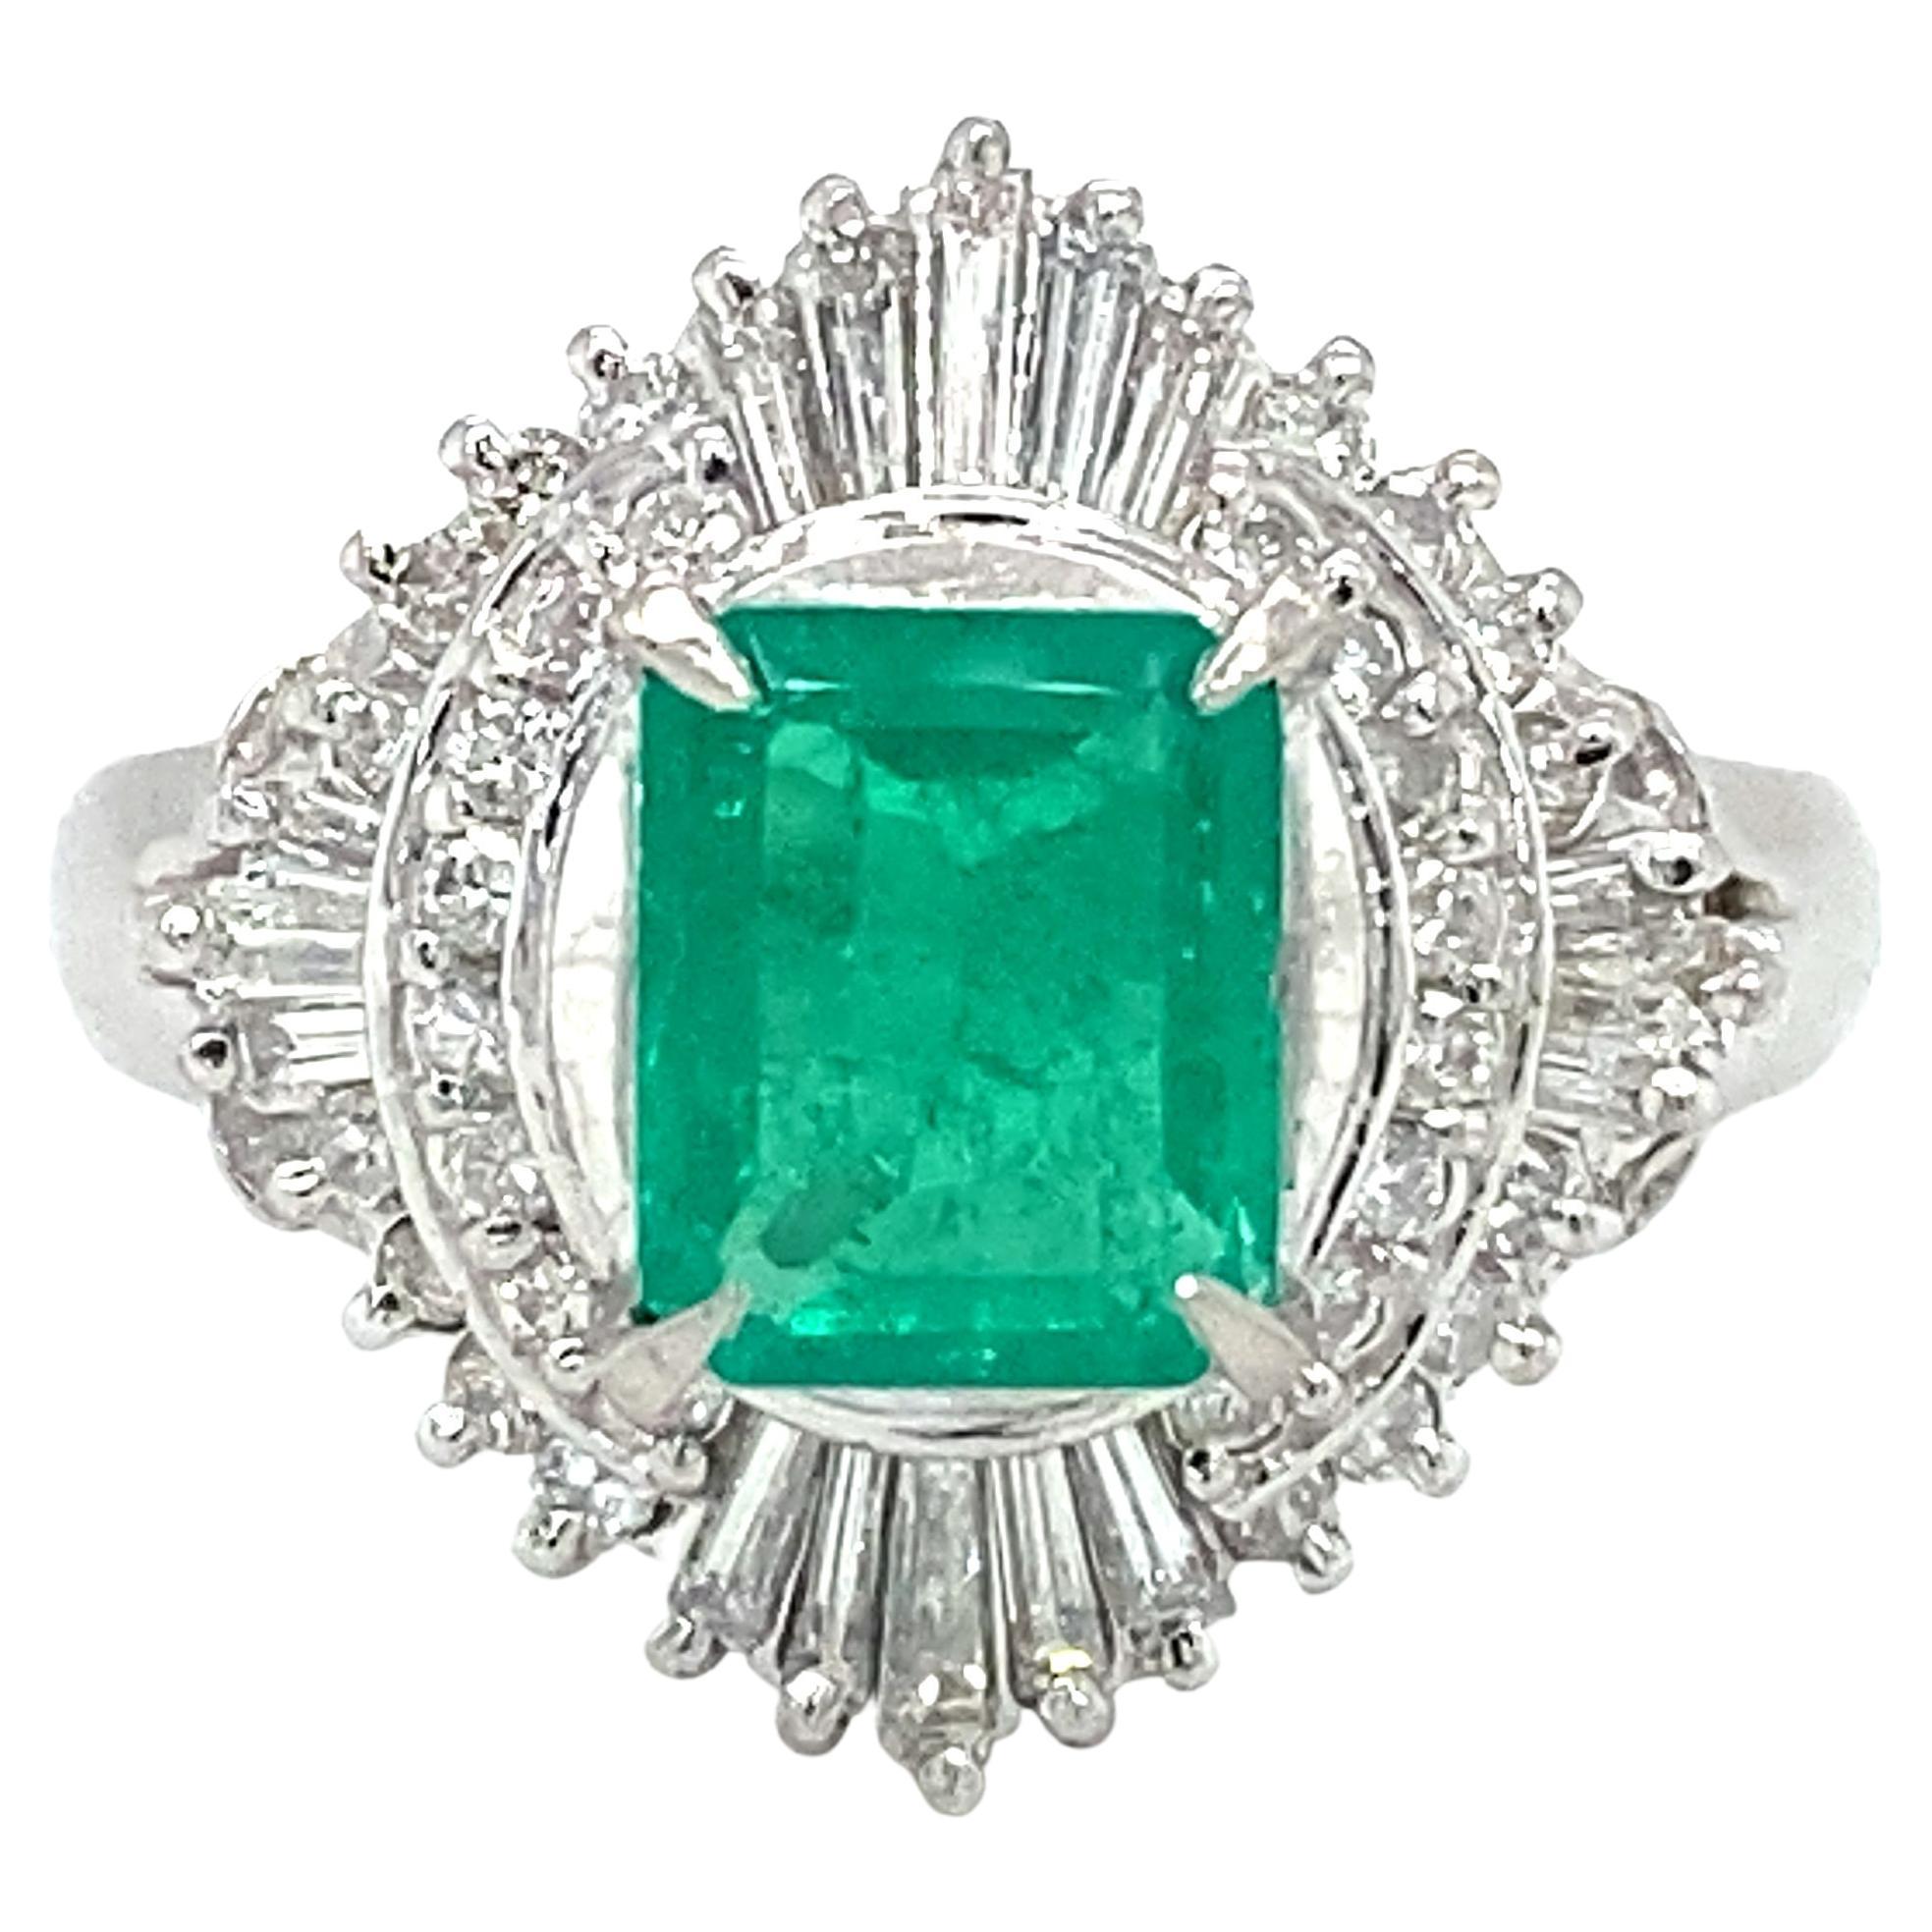 Circa 2000s 1.02 Carat Emerald and Diamond Cocktail Ring in Platinum